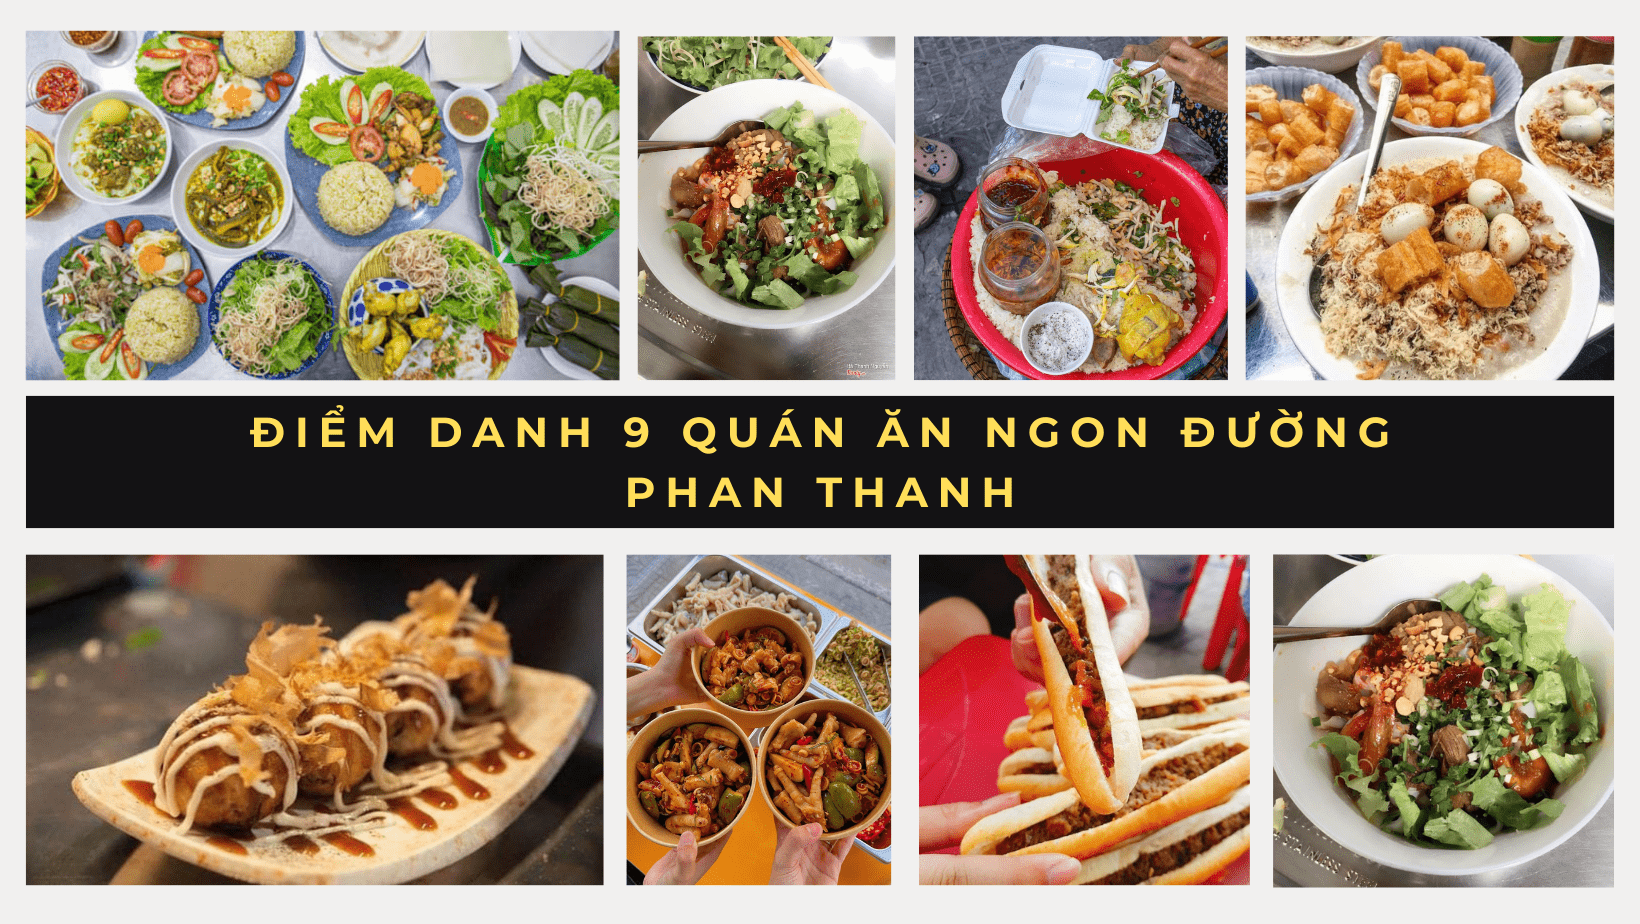 Điểm danh 9 quán ăn ngon đường Phan Thanh